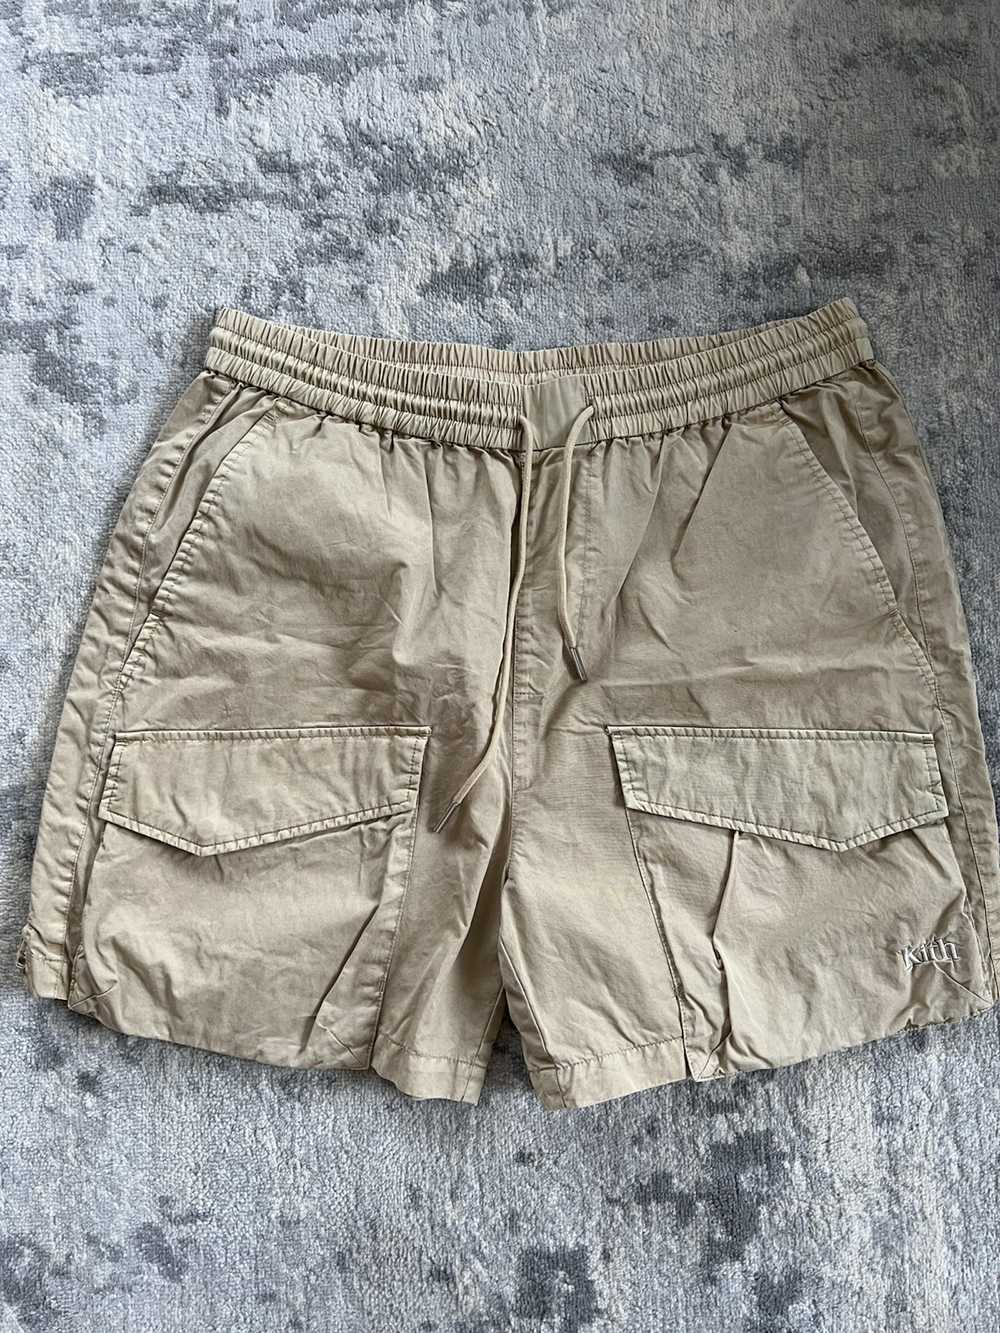 Kith Kith Cream Boreum Shorts Washed Cotton Cargo - image 1